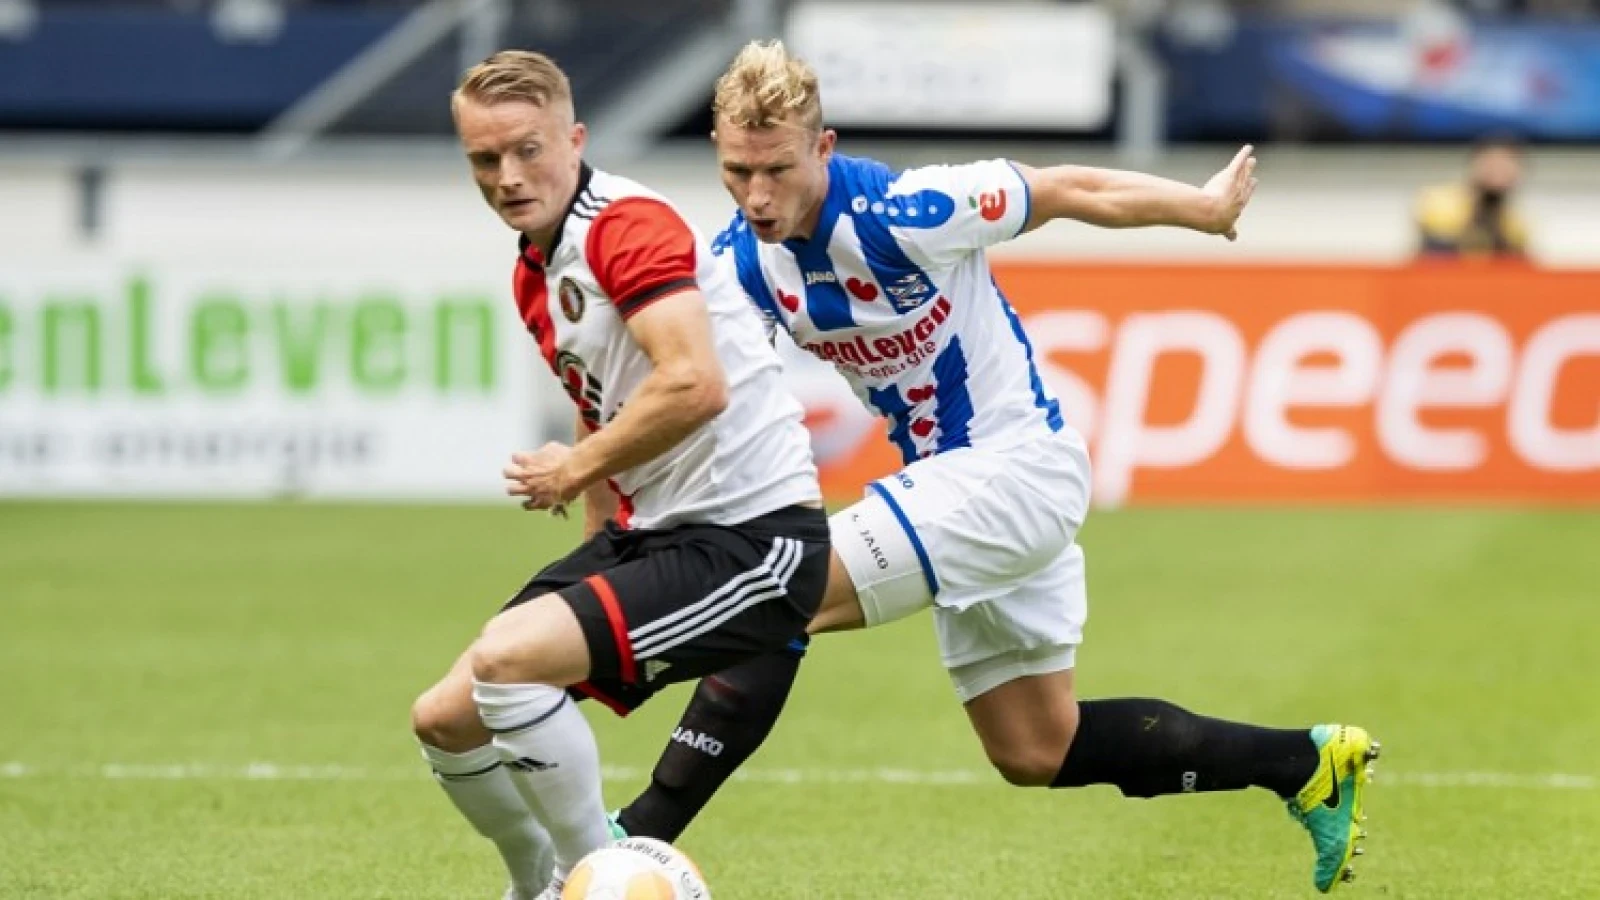 LIVE | sc Heerenveen - Feyenoord 3-5 | Einde wedstrijd